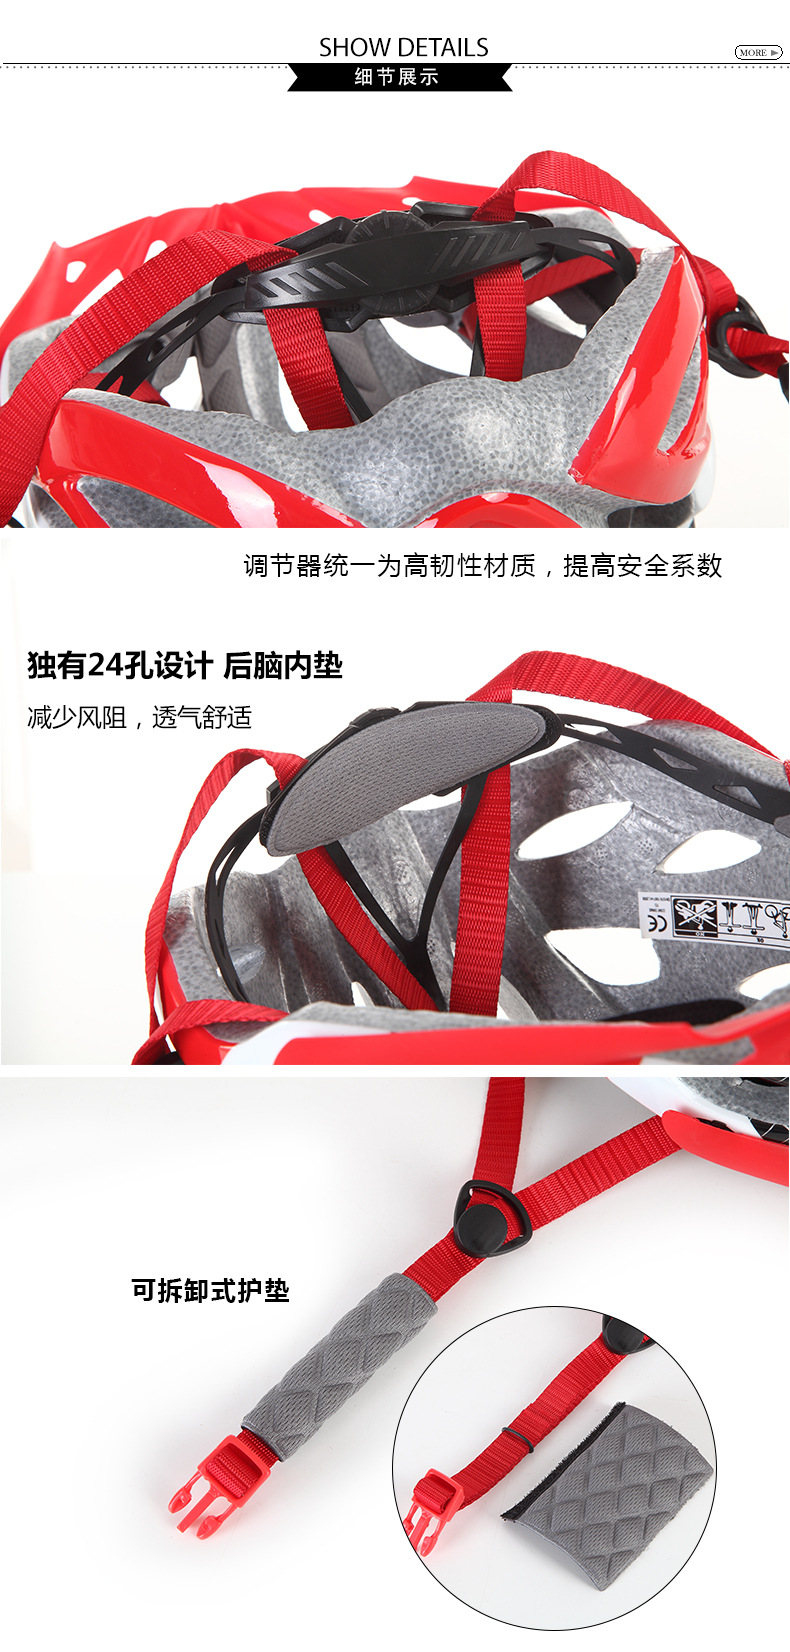 2018新款山地车骑行头盔    超轻一体成型头盔    自行车头盔护具示例图9